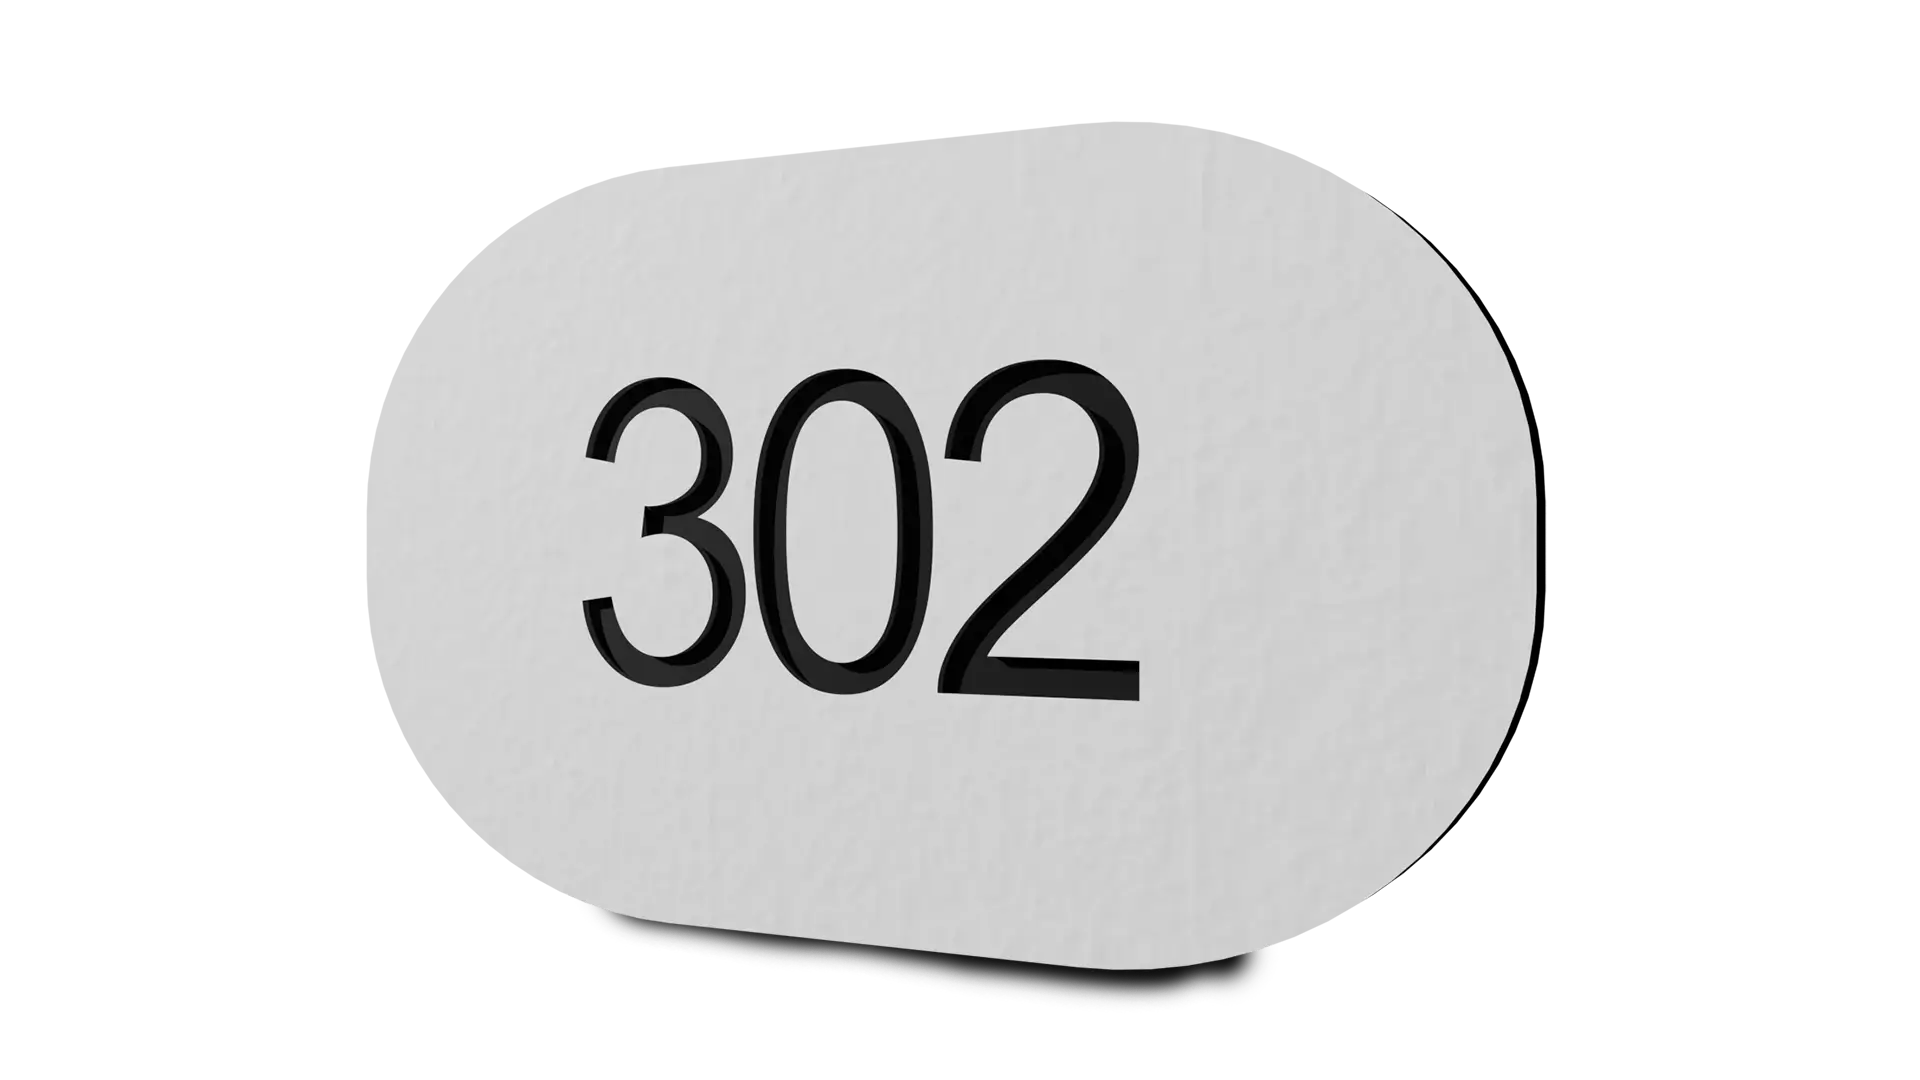 Valkoinen numerokyltti taloon, oveen tai vaikkapa postilaatikkoon Kilpexiltä